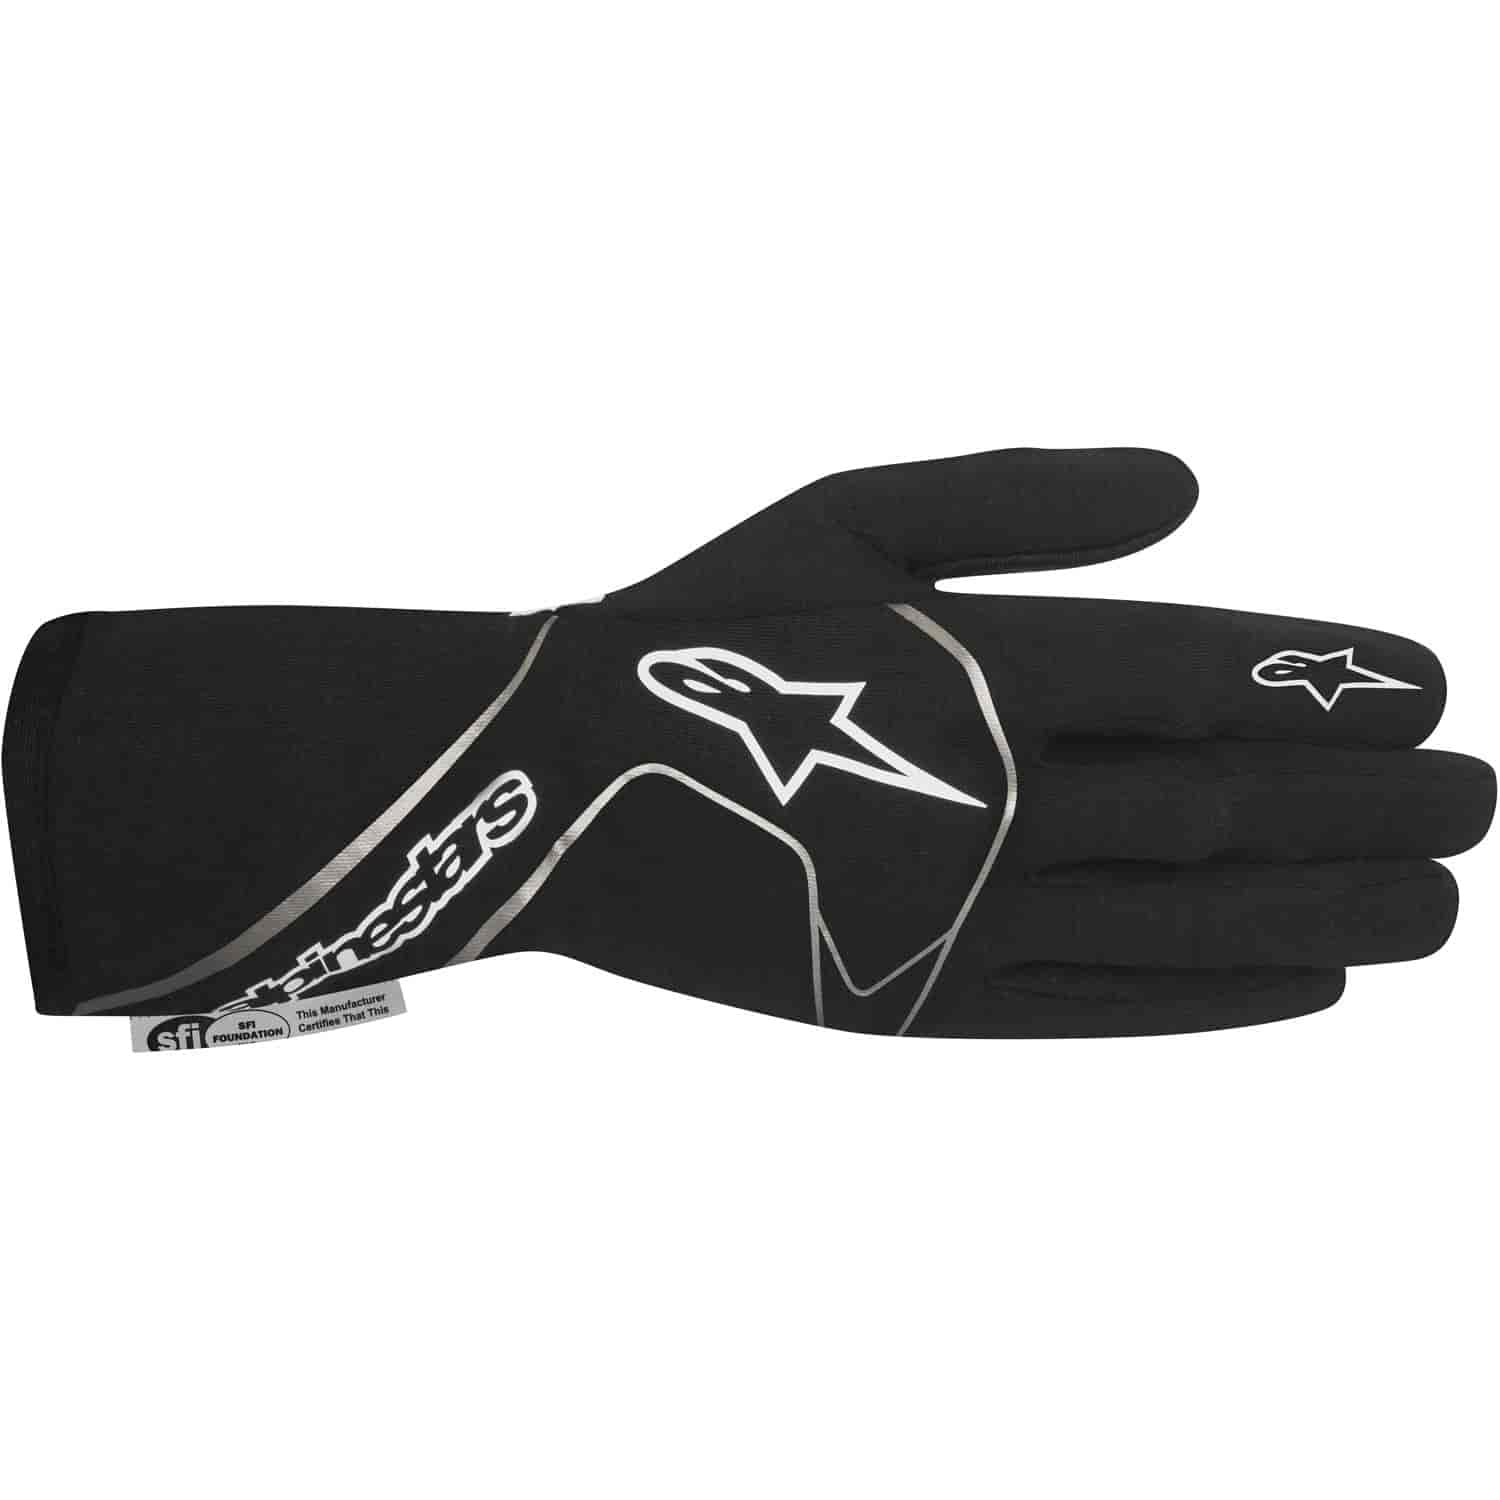 Tech 1 Race Gloves Black/White SFI 3.3/5